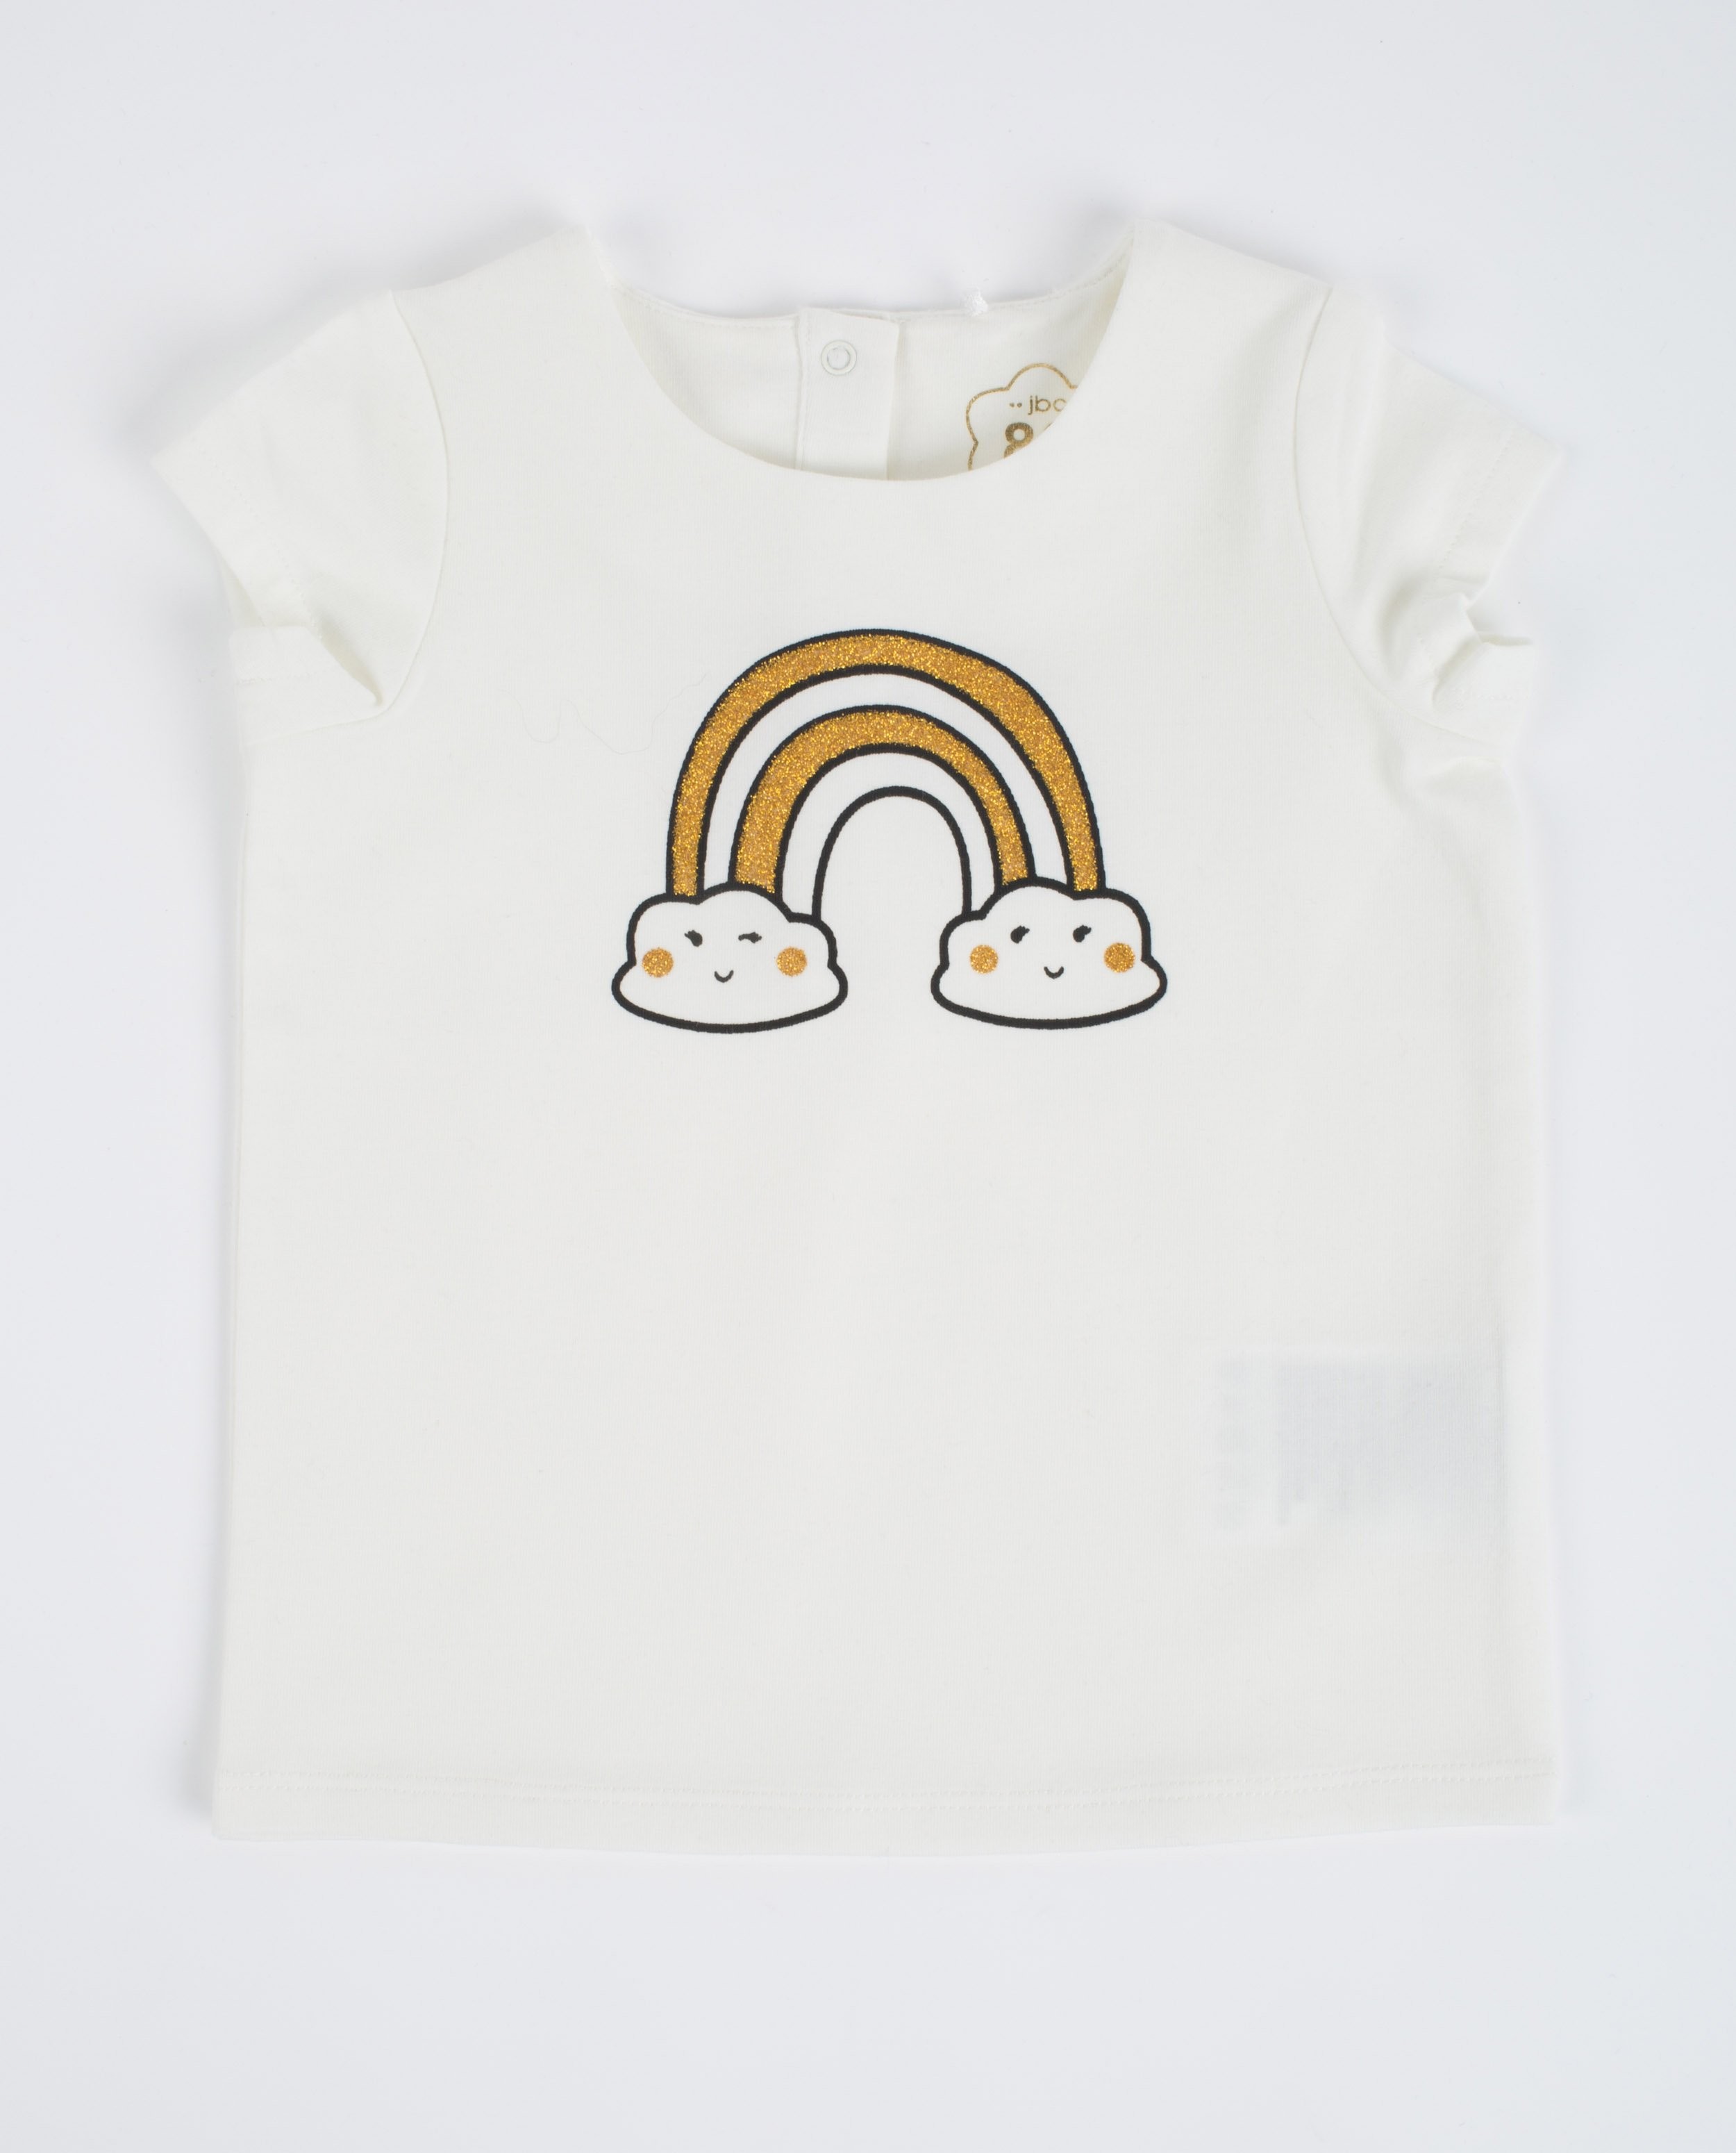 Roomwit T-shirt met regenboogprint - null - JBC